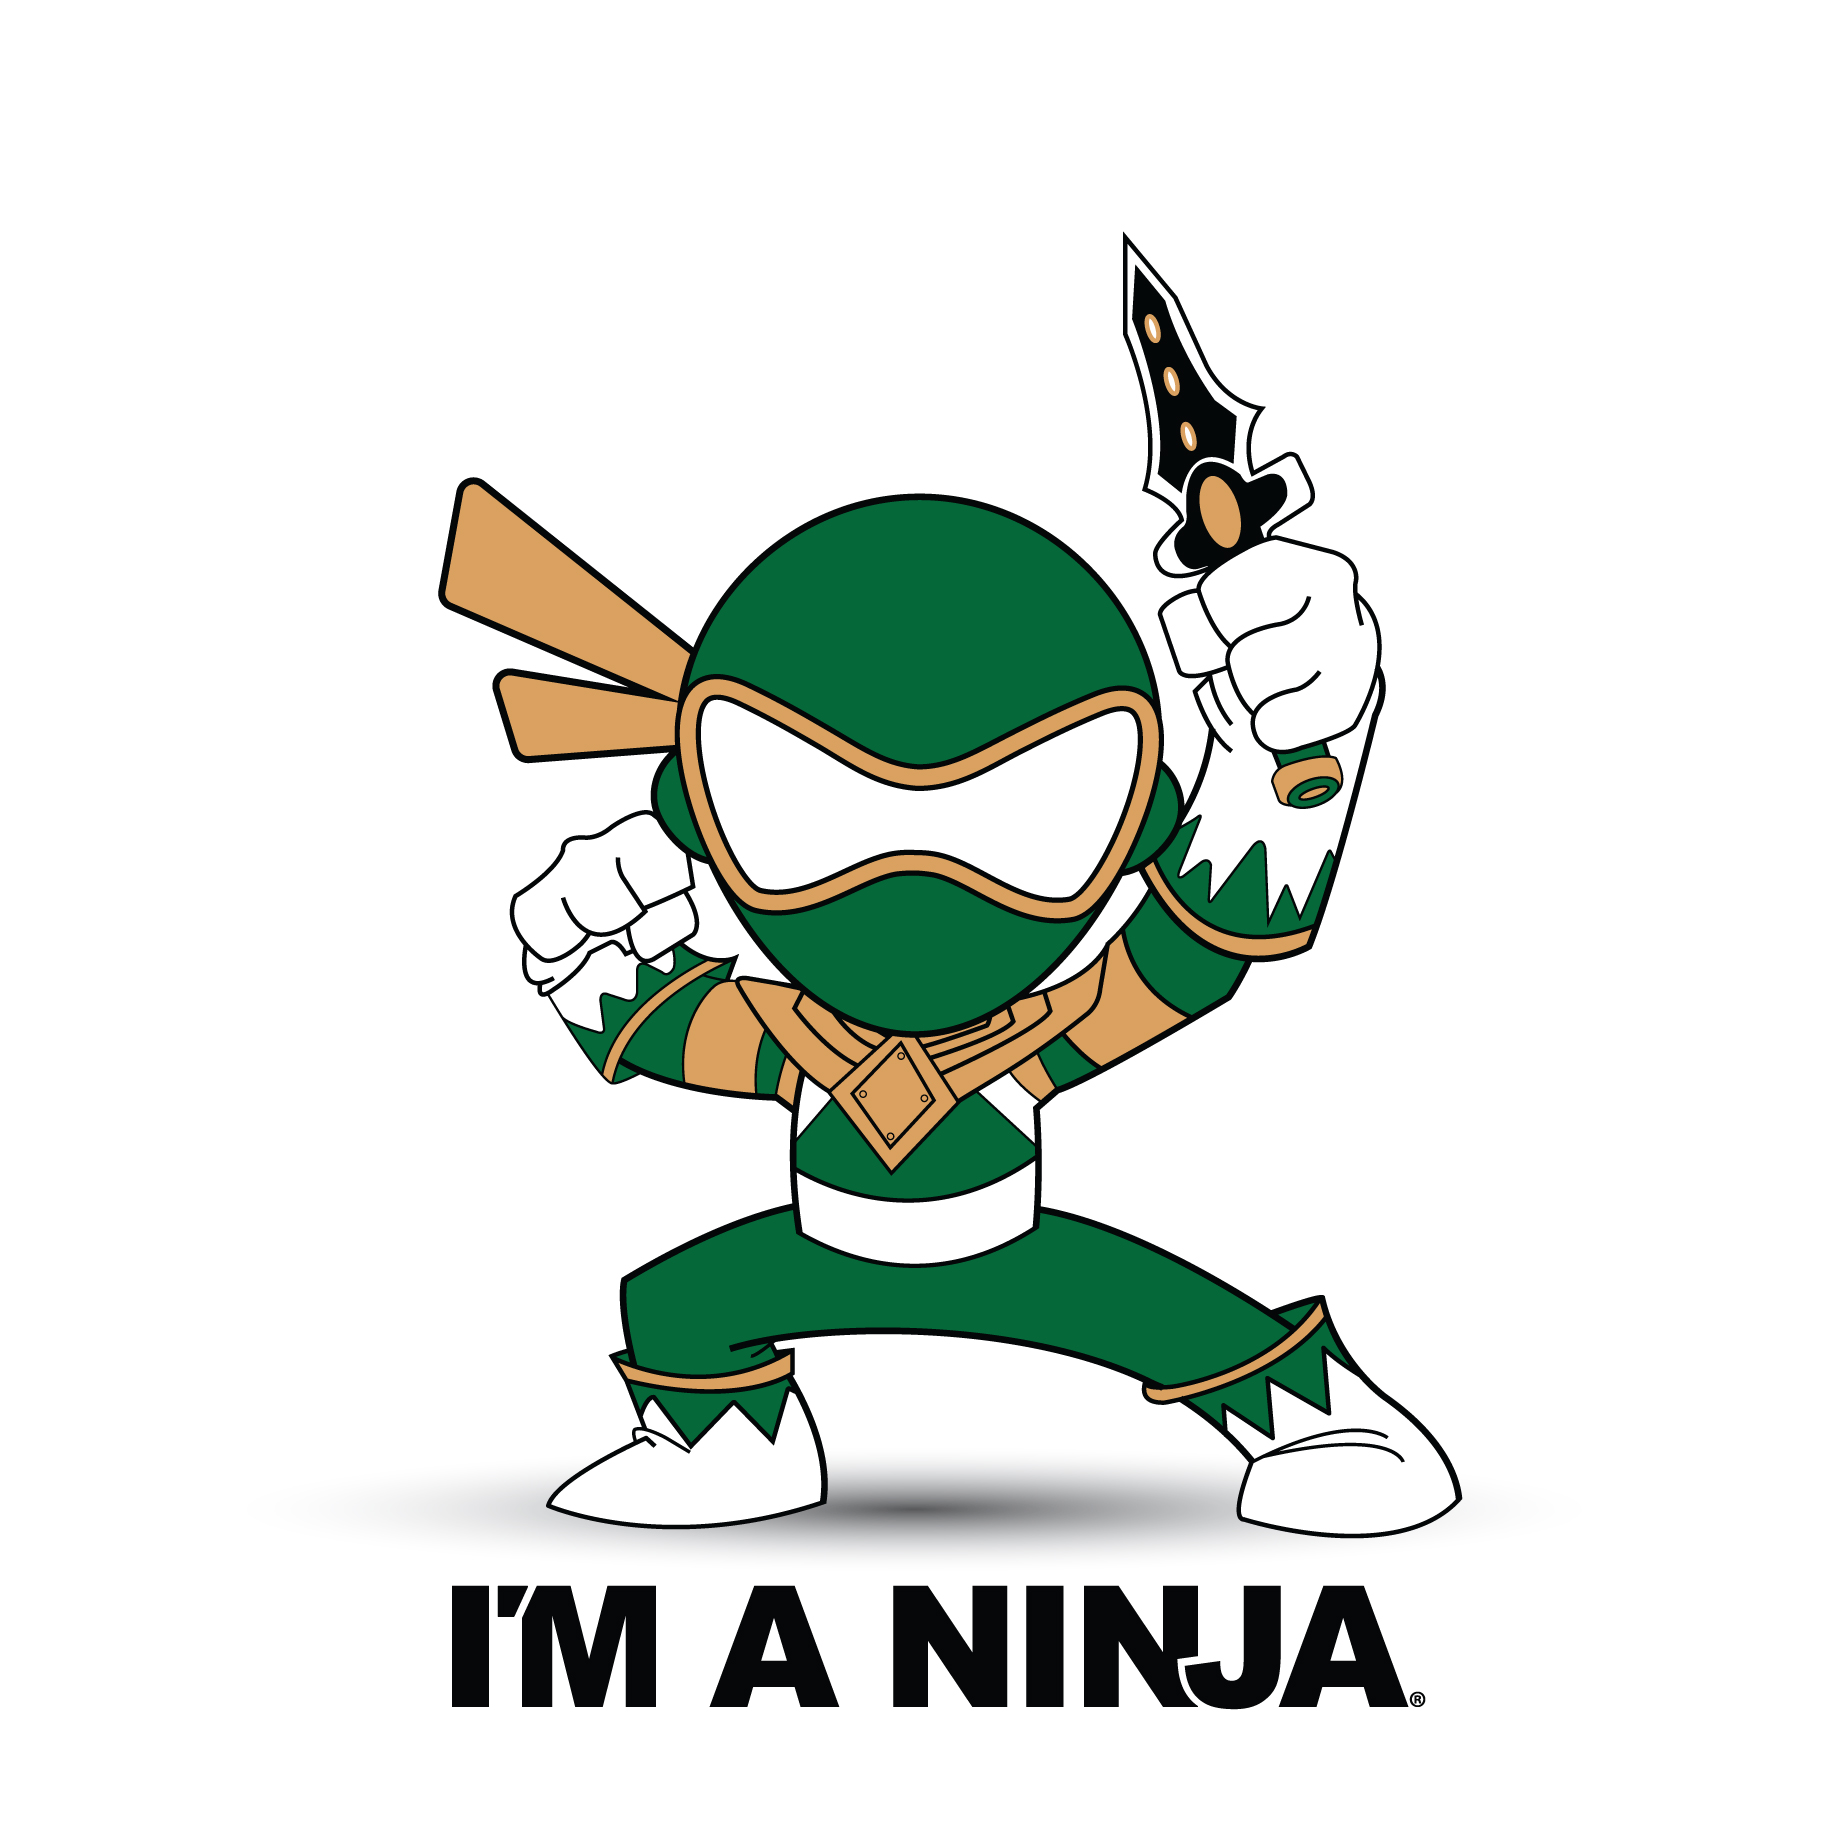 Green Ranger x I'M A NINJA